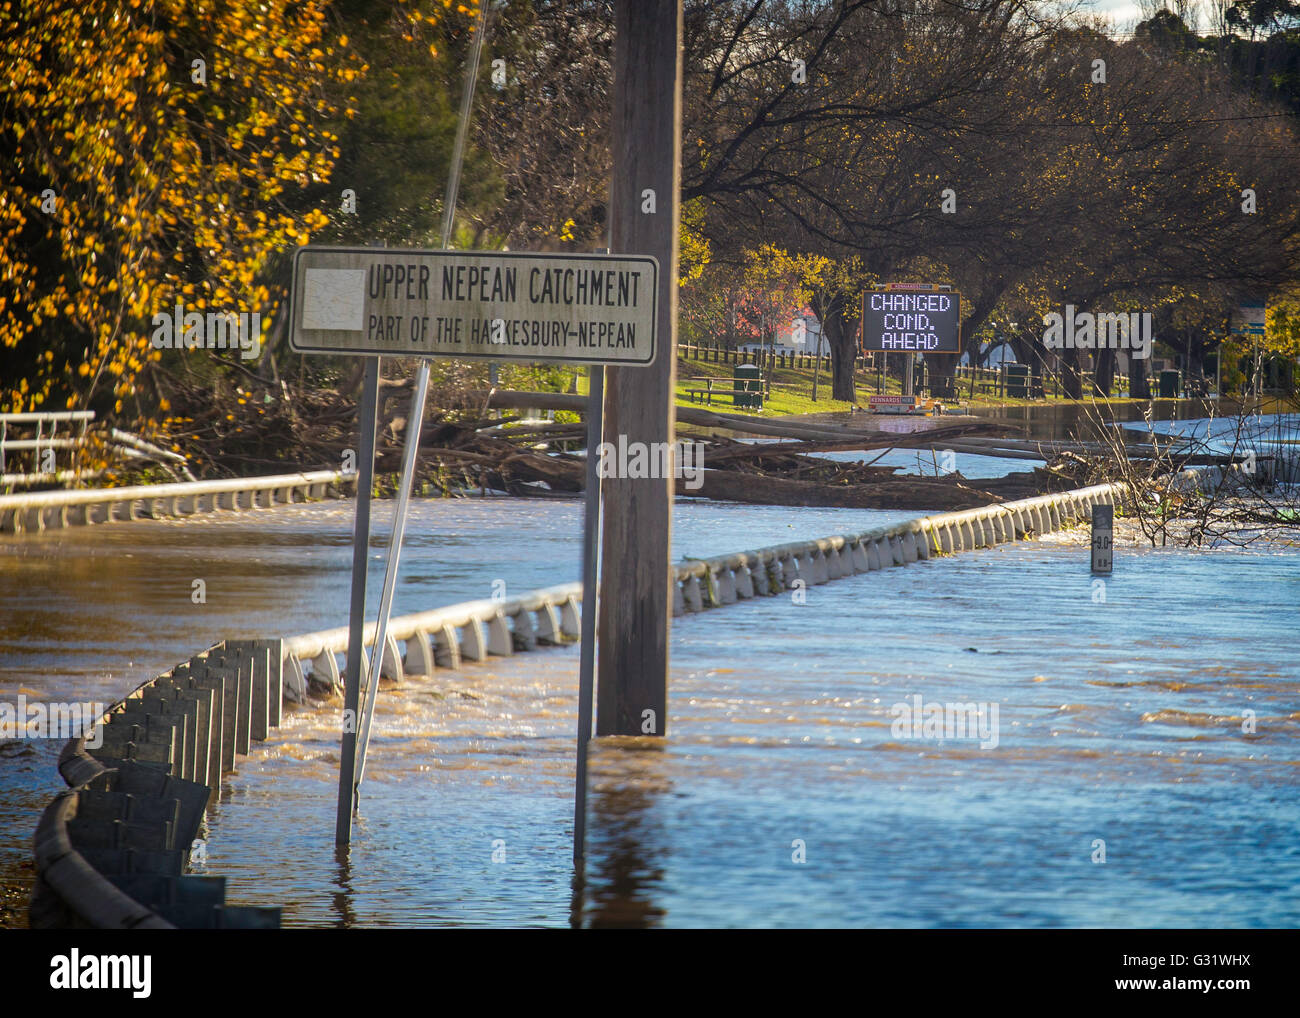 Camden, New-South.Wales, Australien. 6. Juni 2016. Cowpasture Brücke überflutet nach starken Regenfällen, der Haupteingang zum Camden Credit: Stonemeadow Fotografie/Alamy Live News Stockfoto